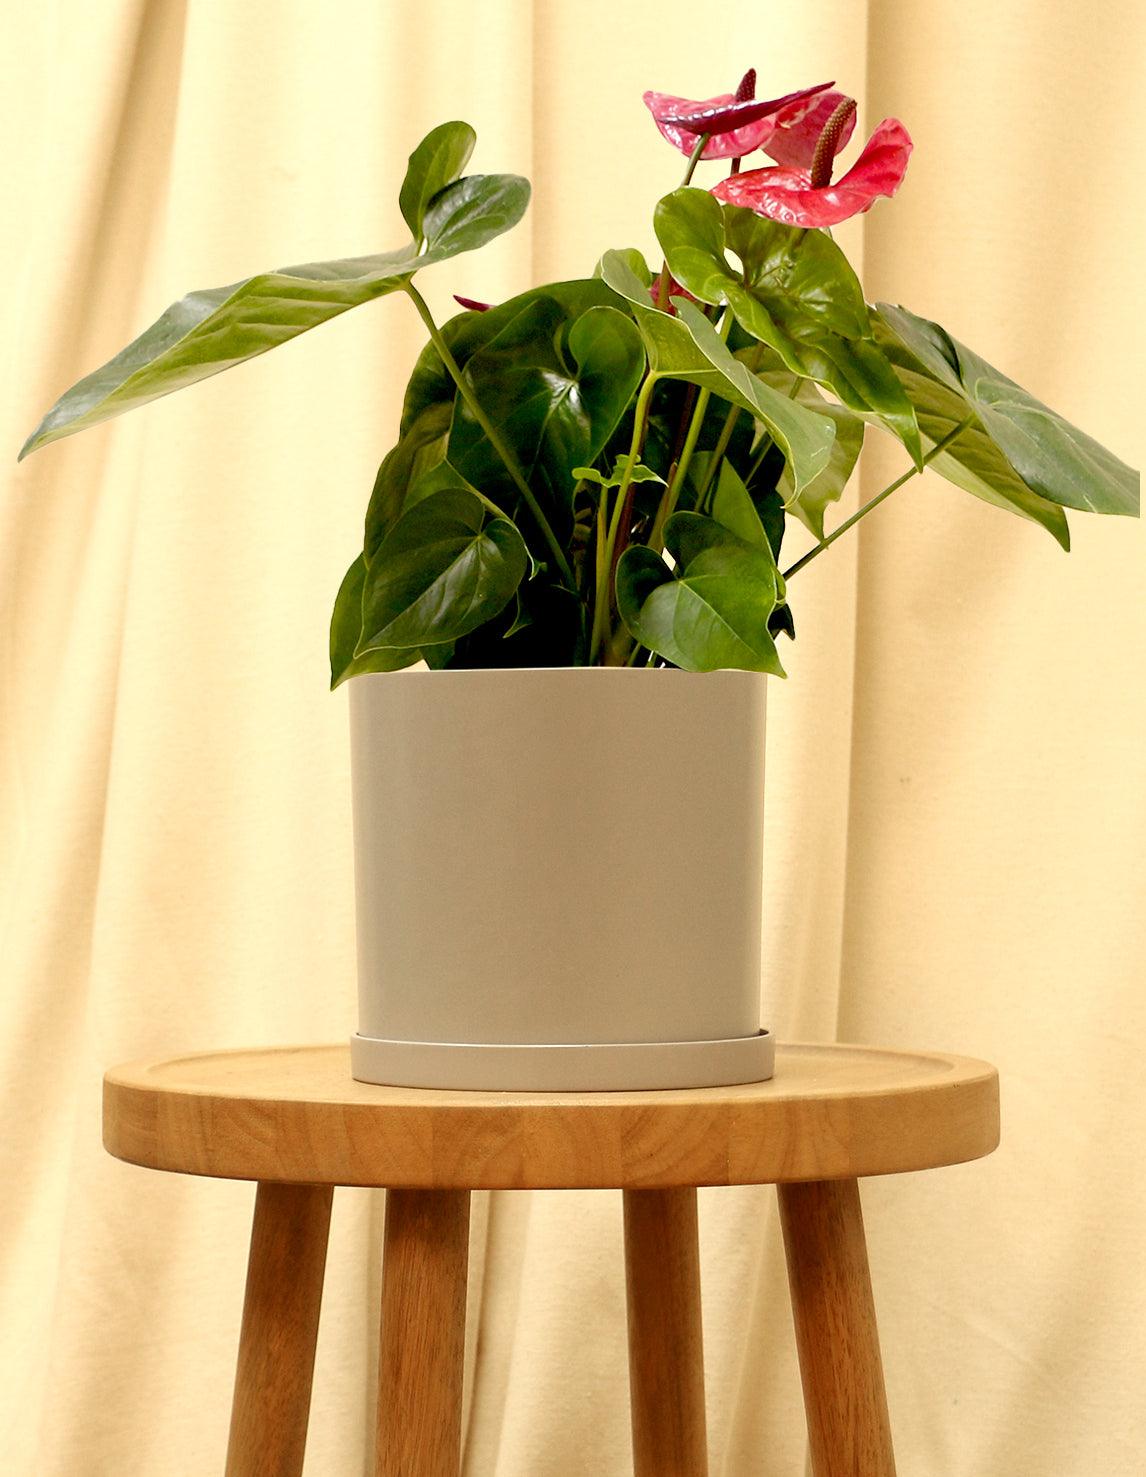 Medium Red Anthurium Tailflower in grey pot.